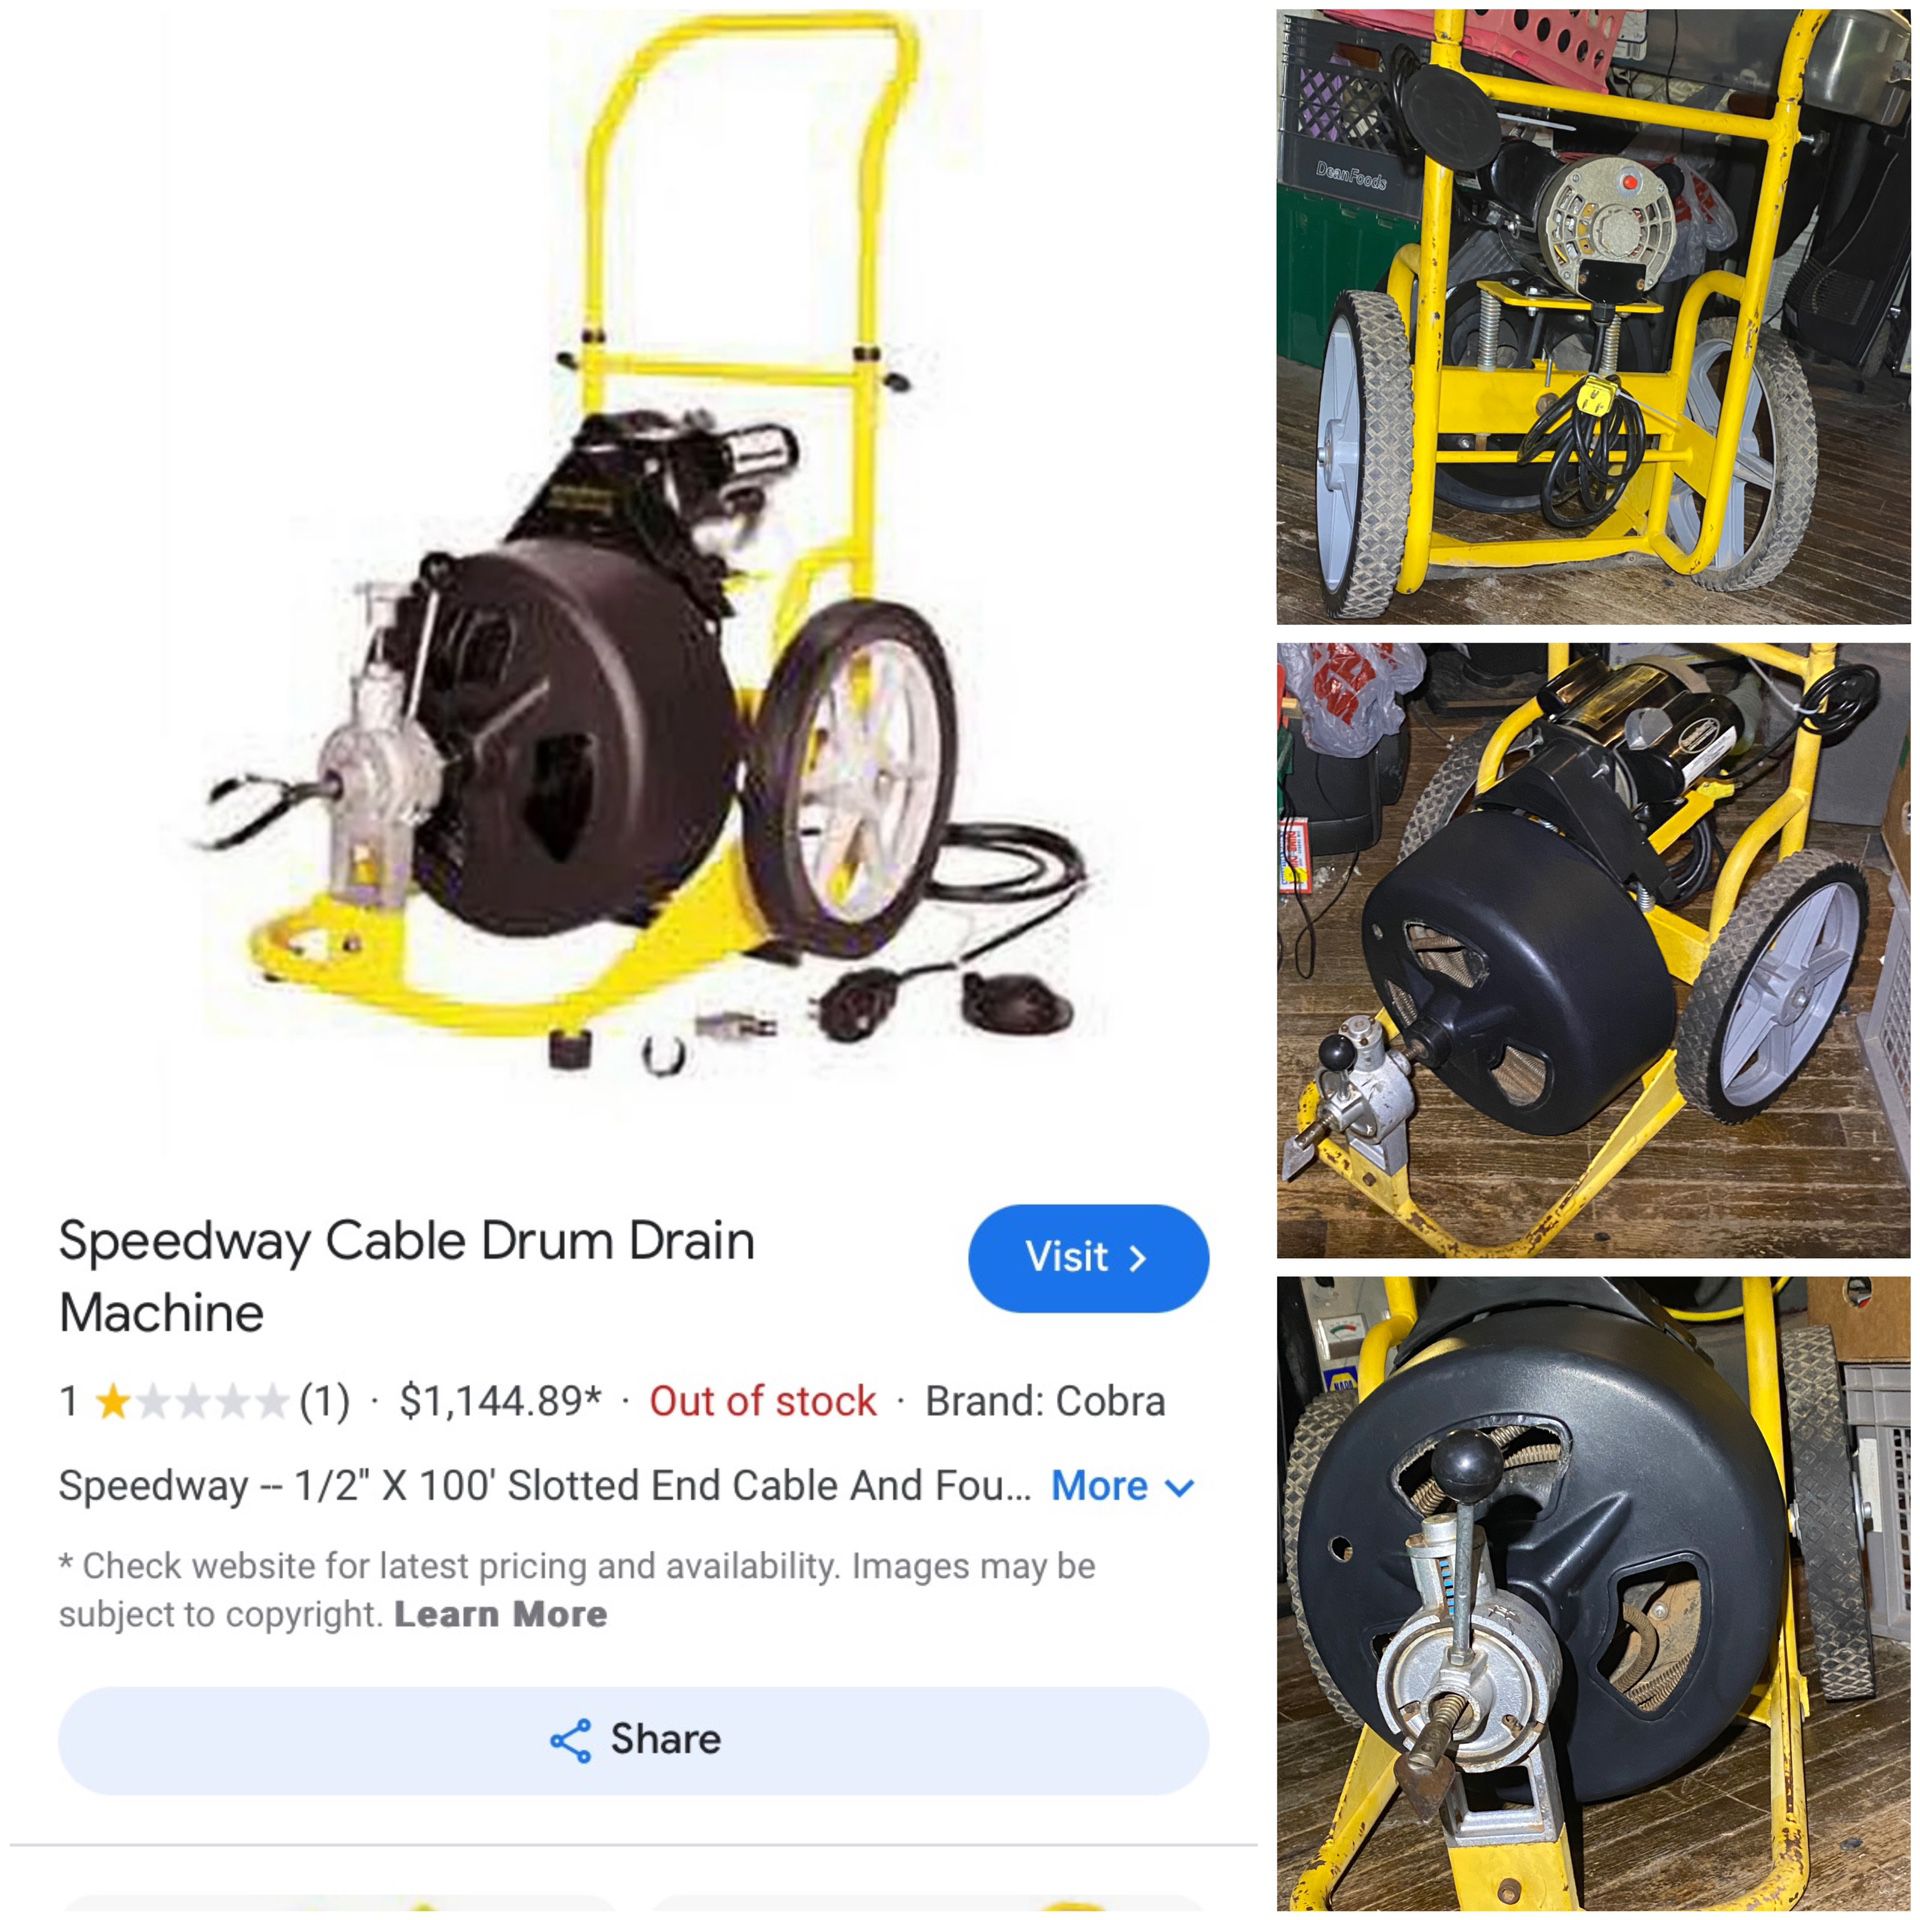 Speedway Cable Drum Drain Machine